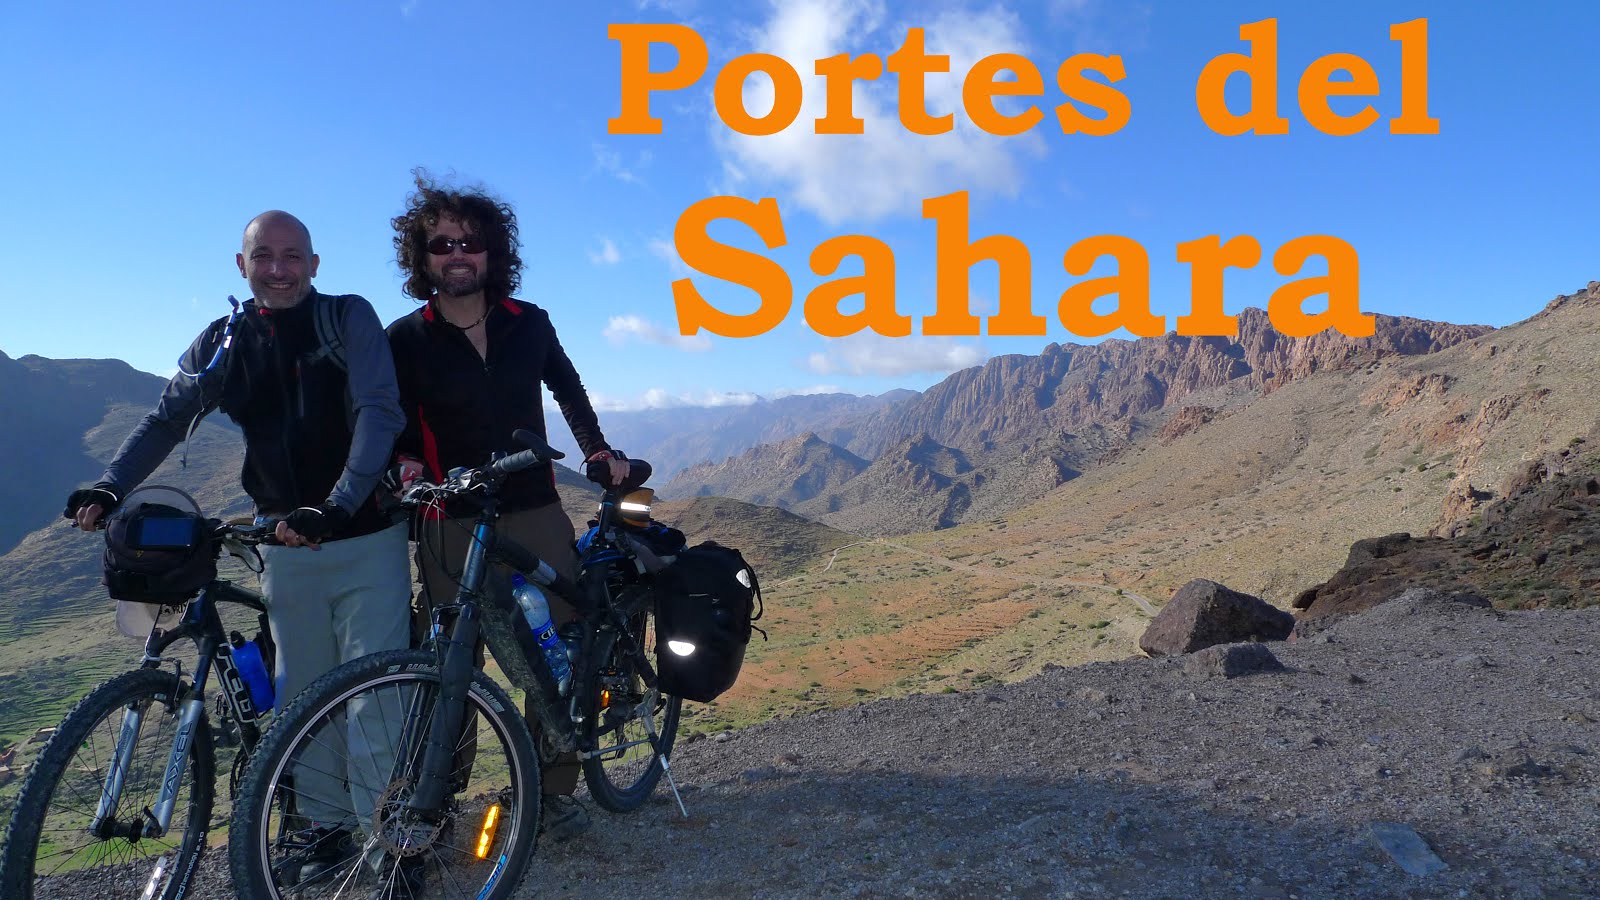 Portes del Sahara en Bici